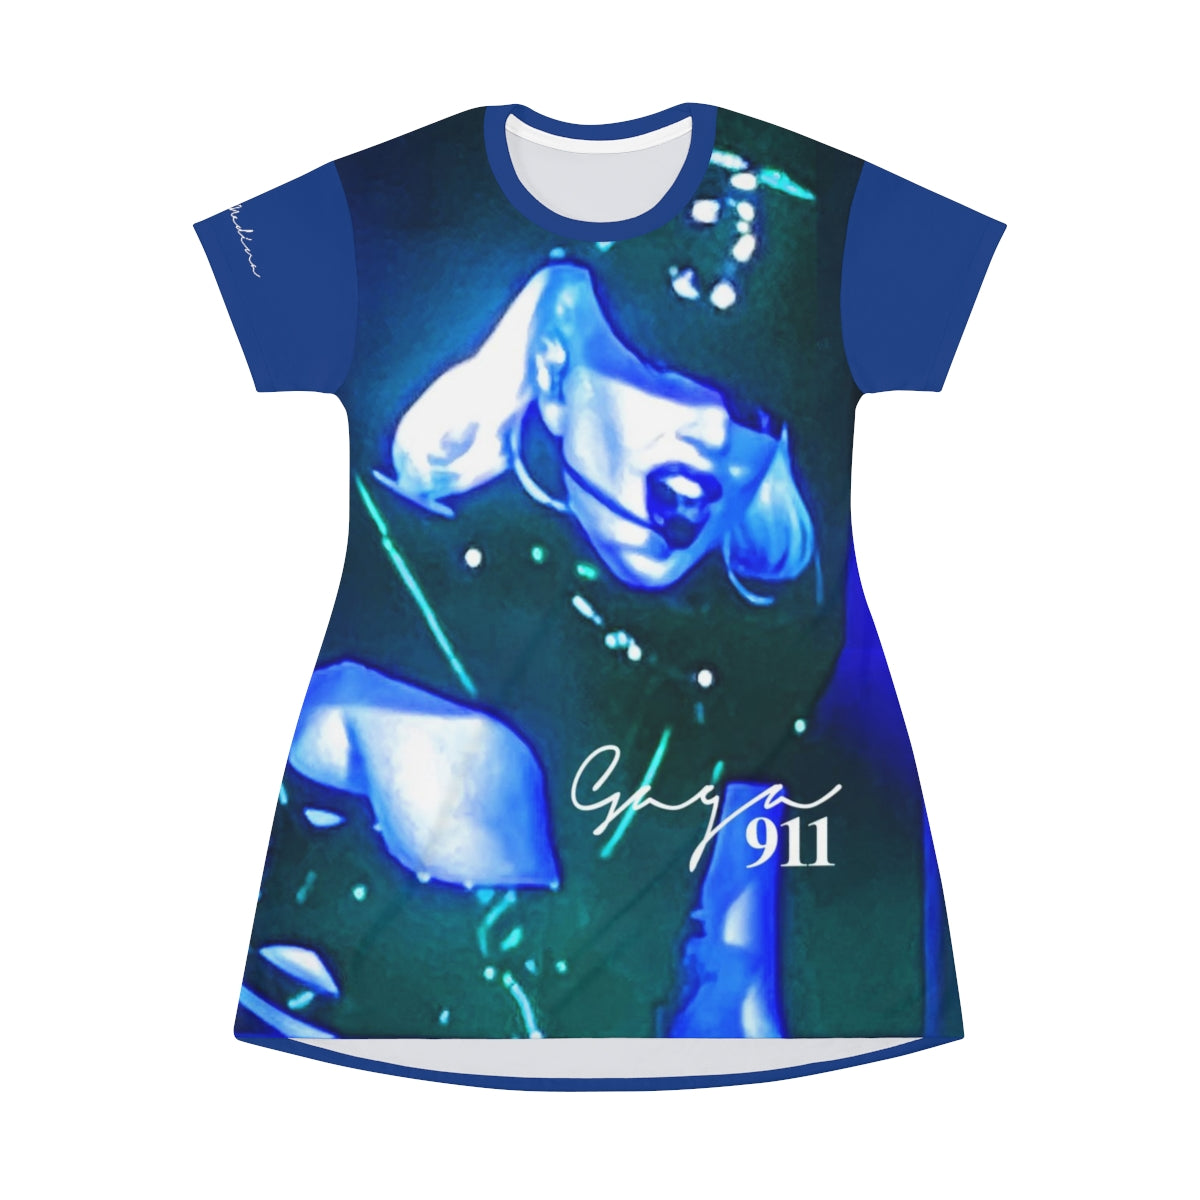 Shirtdress, Blue Gaga 911